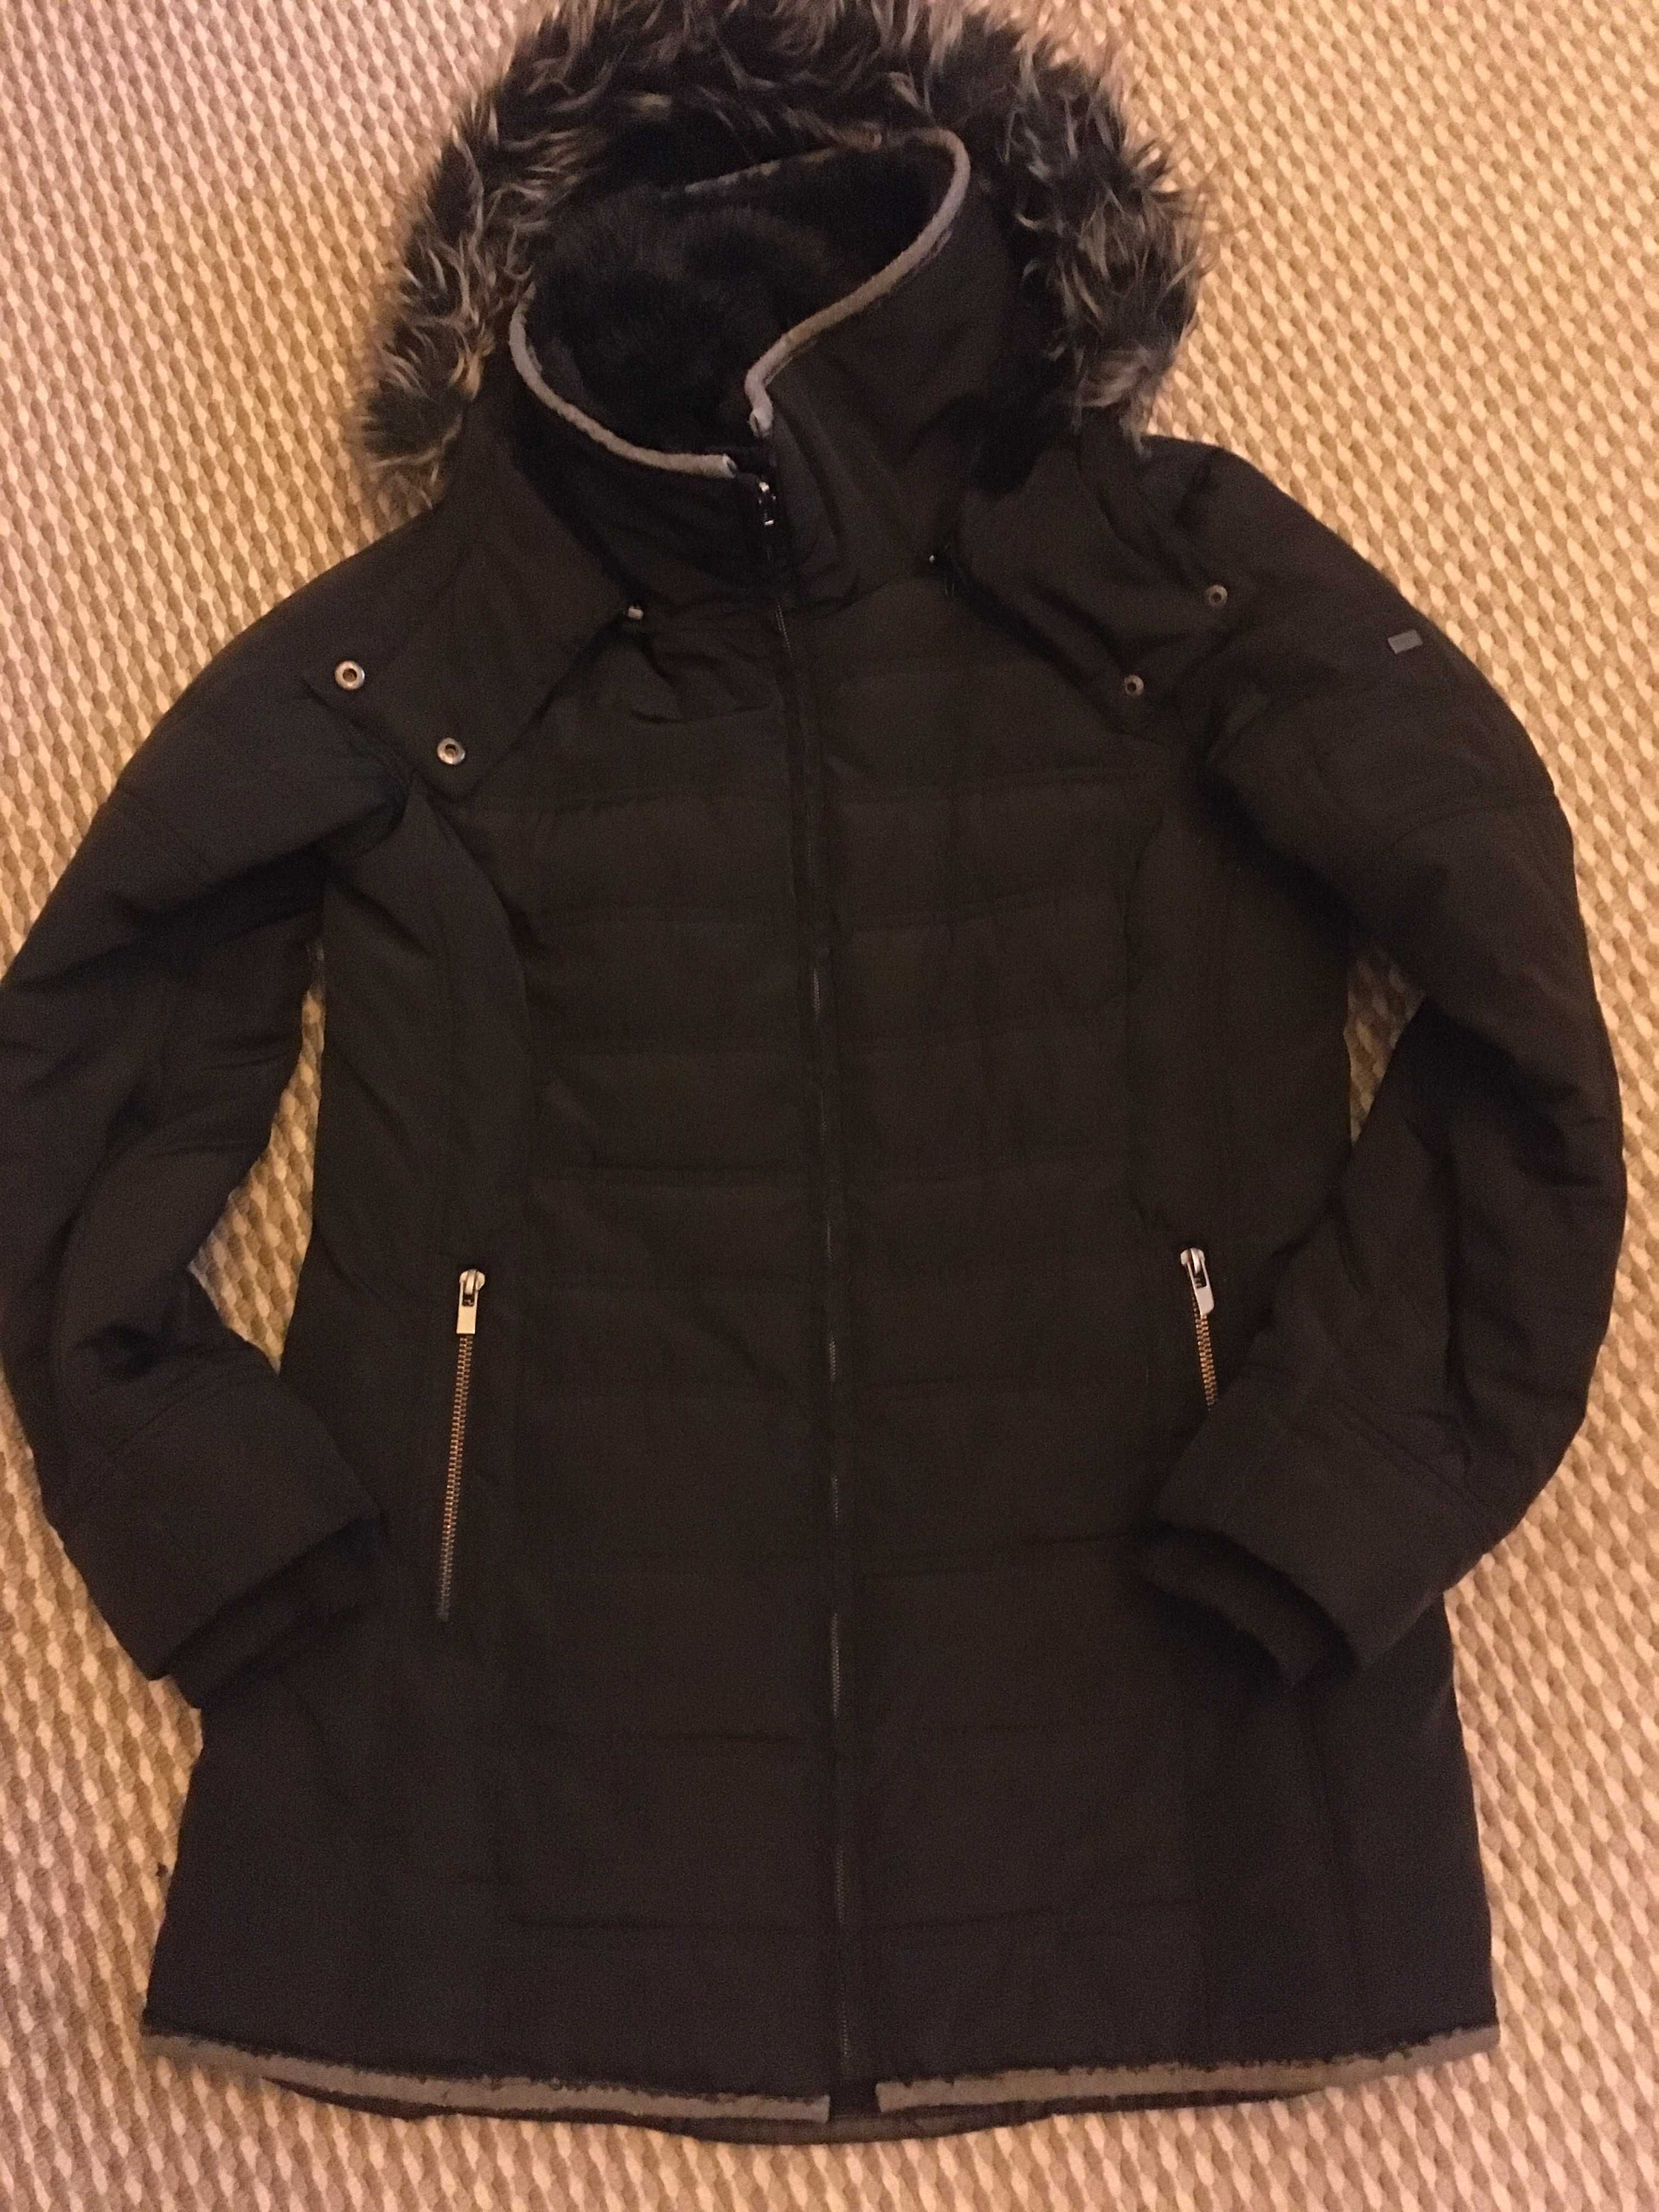 kurtka zimowa ciepła czarna długa dłuższa reserved 38 M/L